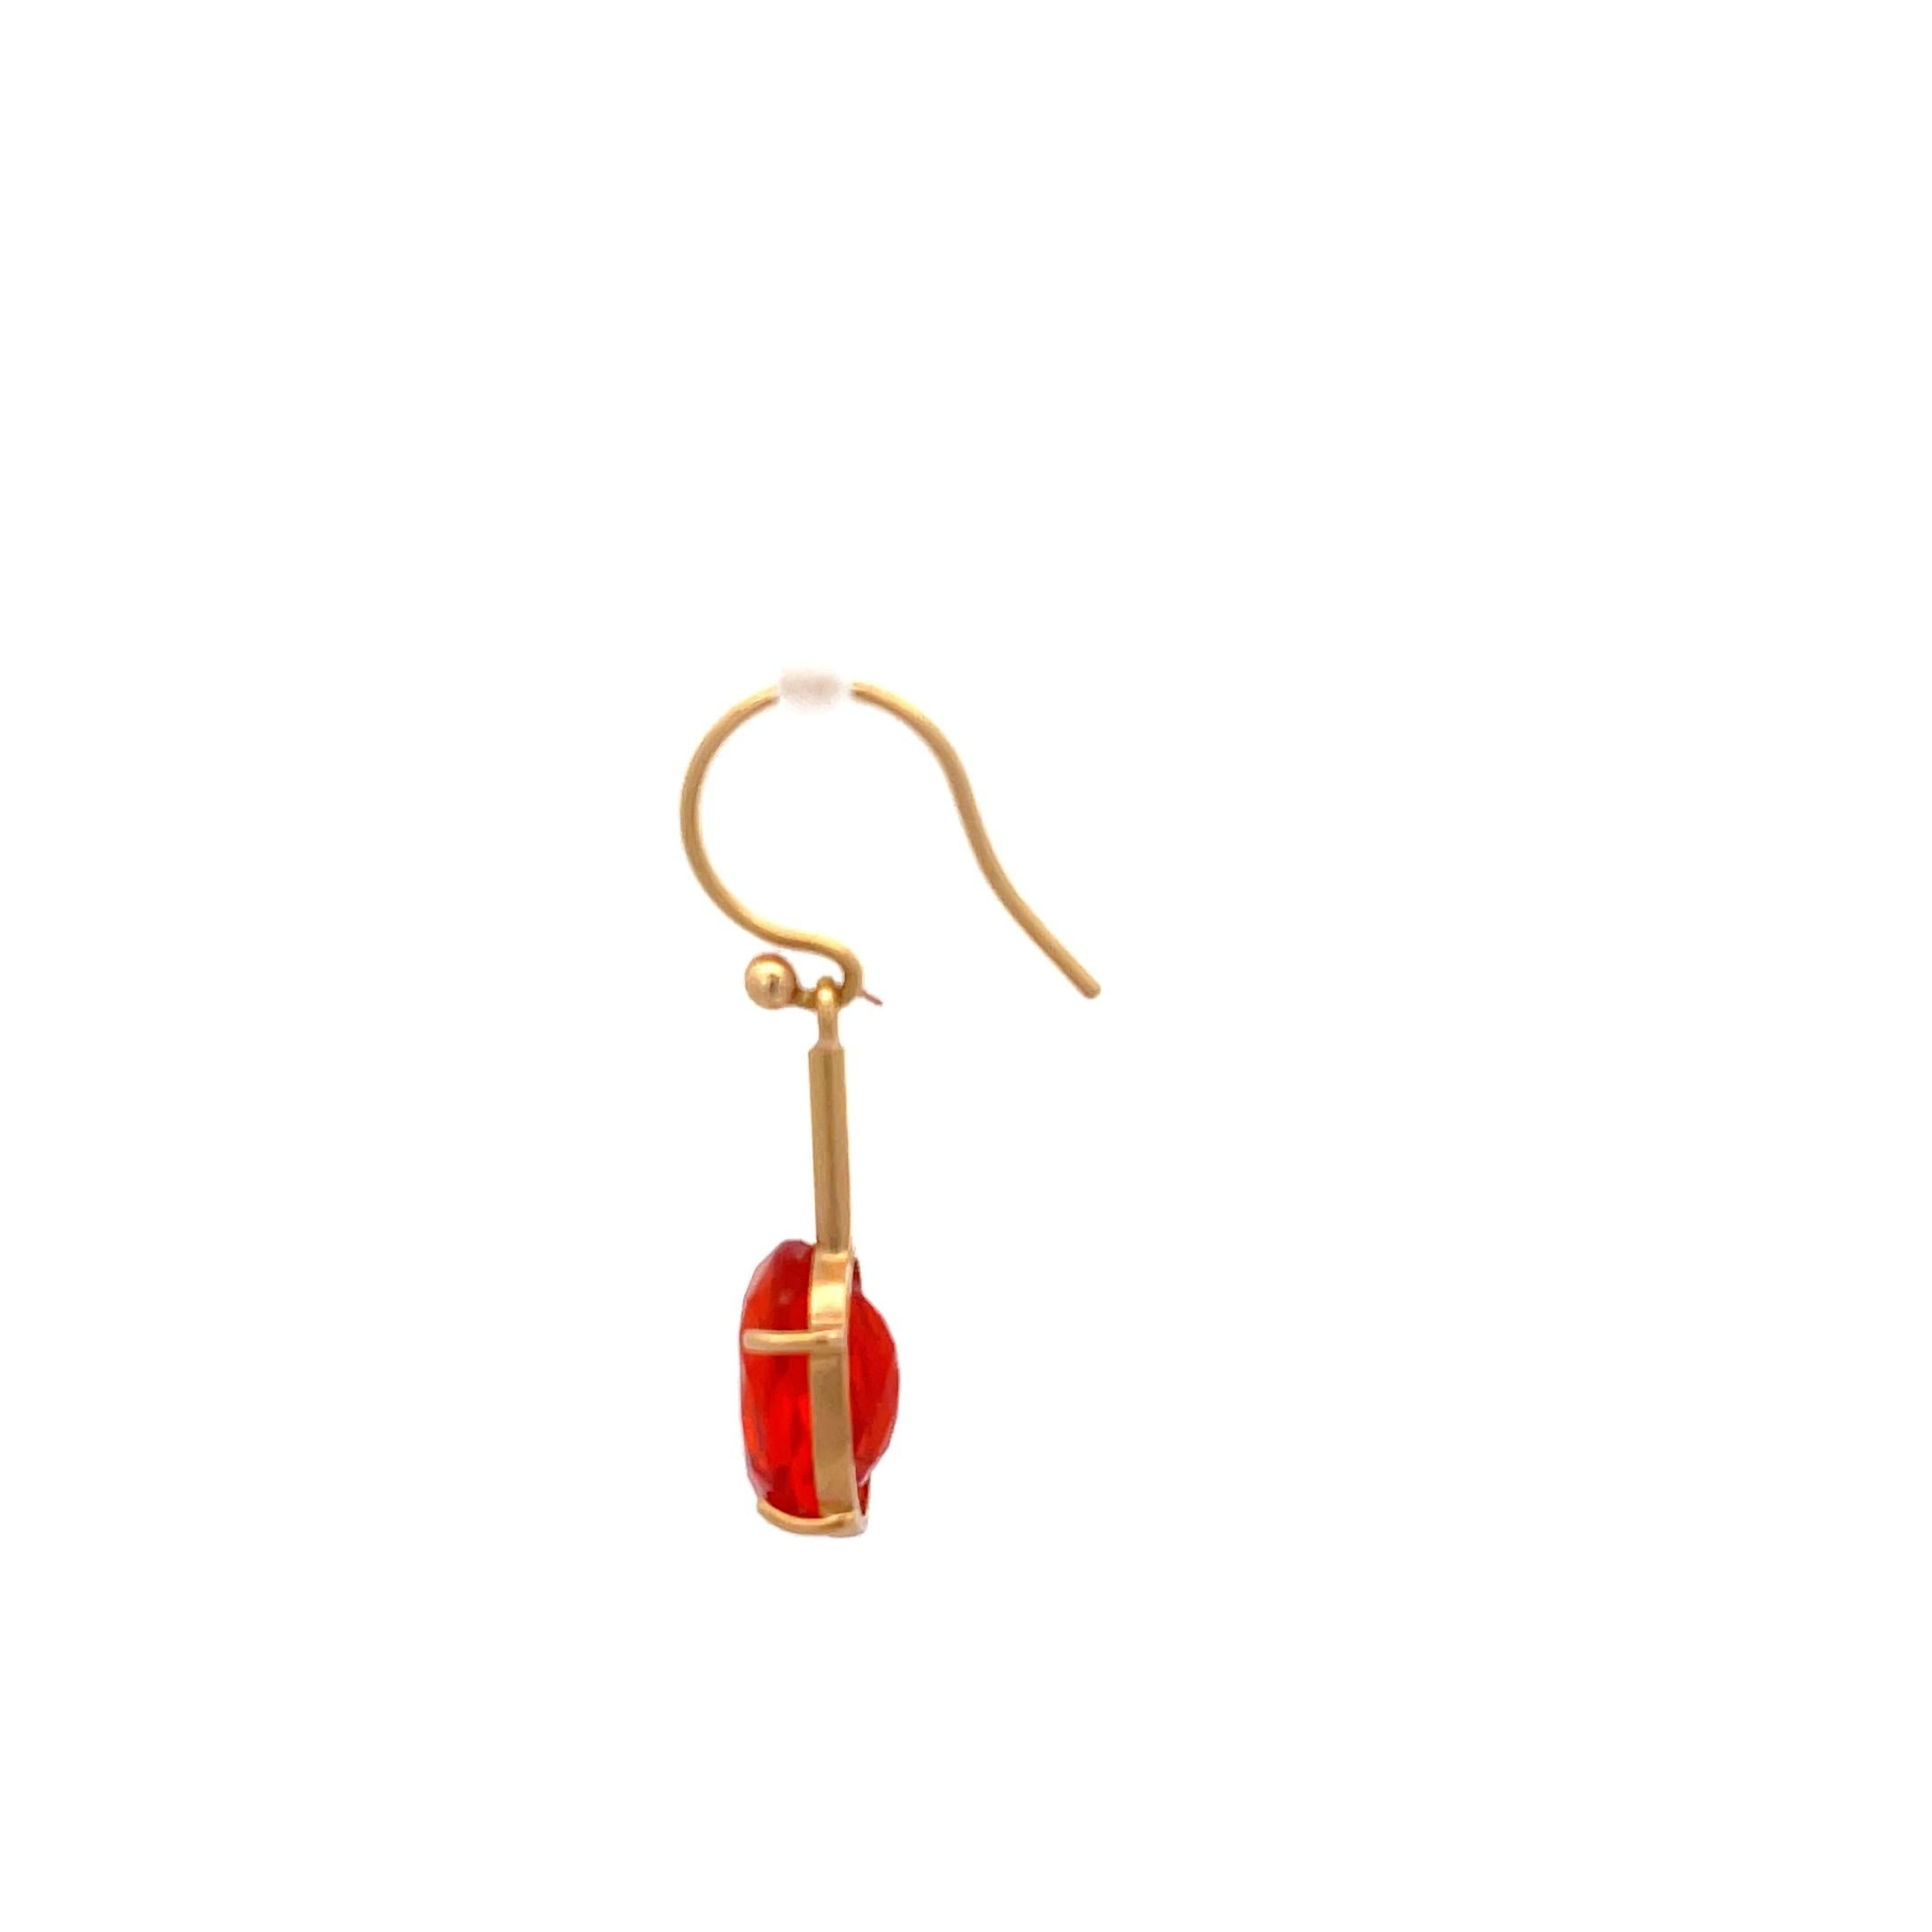 Oval Cut Irene Neuwirth Fire Opal Single Earring 18K Rose Gold For Sale